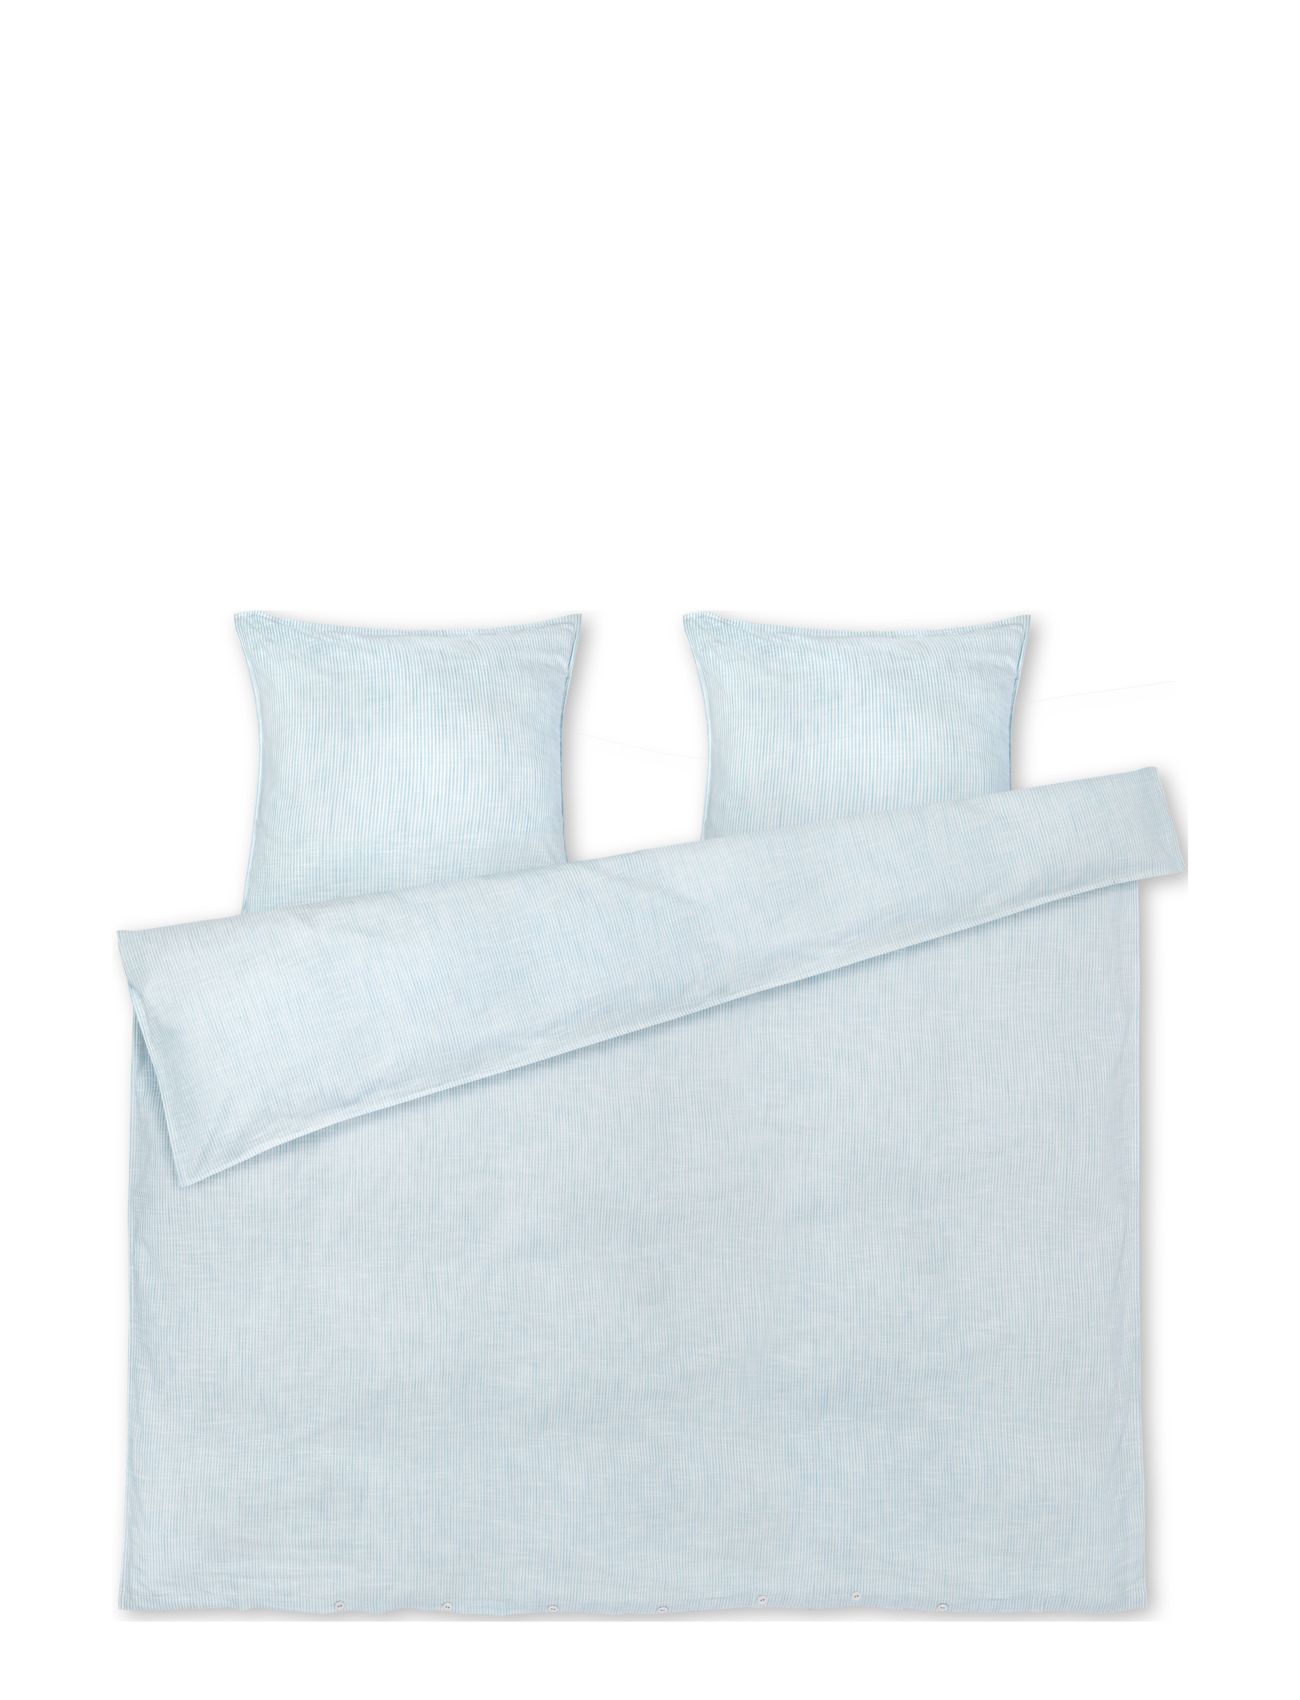 Monochrome Lines Sengetøj 200X220 Cm Dk Home Textiles Bedtextiles Bed Sets Blue Juna